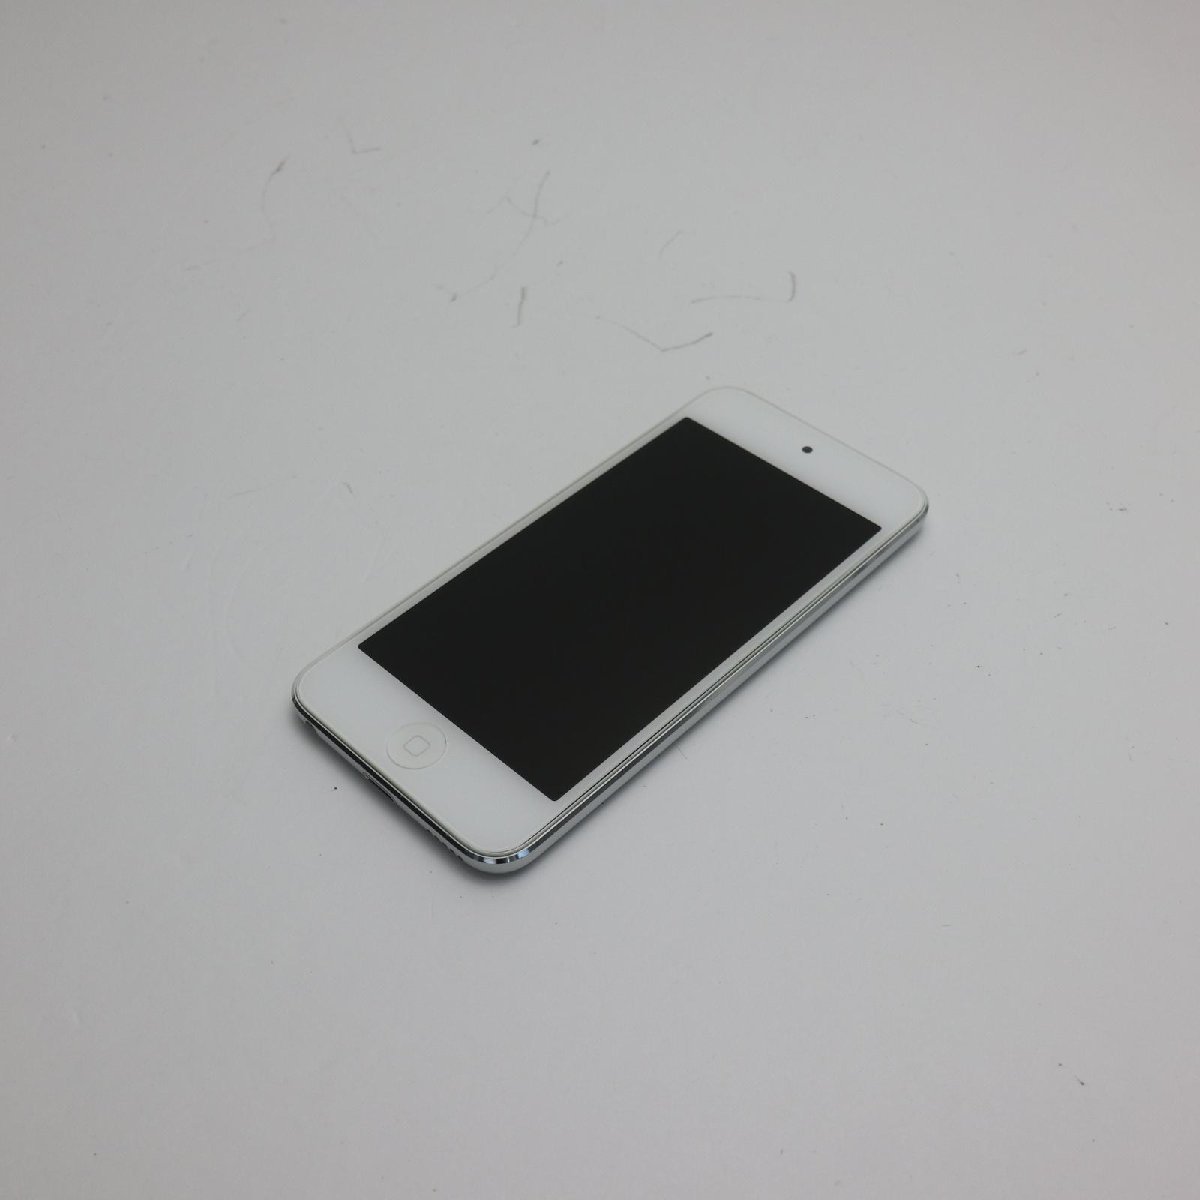 美品 iPod touch 第5世代 64GB ホワイト 即日発送 MD721J/A MD721J/A Apple 本体 あすつく 土日祝発送OK